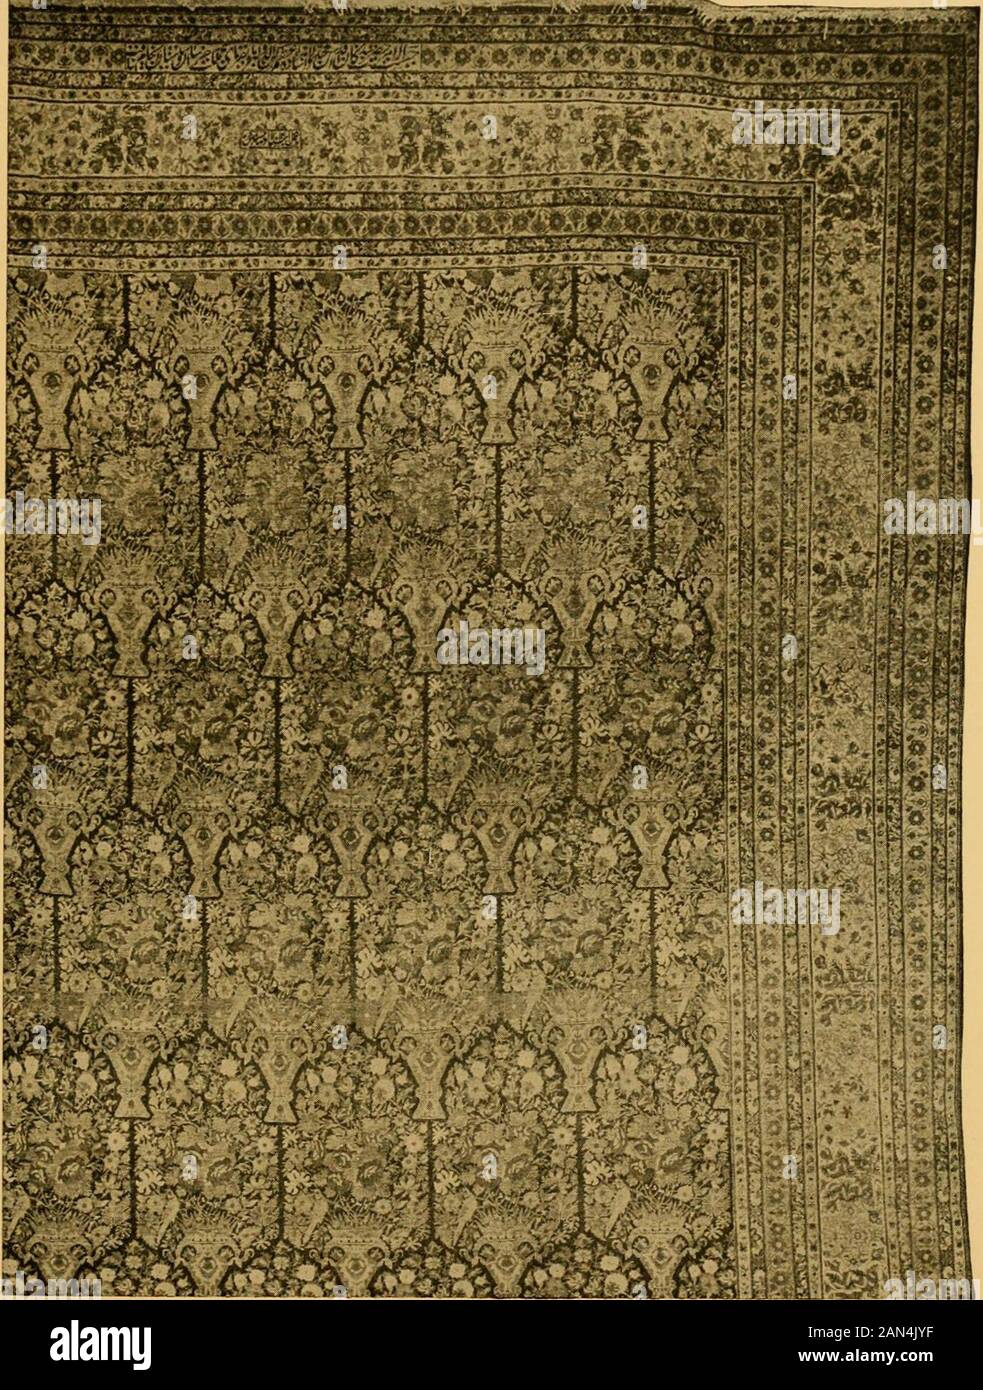 Elenco speciale di tappeti persiani : in moquette dimensioni oltre 10 piedi  di lunghezza. . ordinare oro. N. 6671. 17 6 x 6 8 Kurdistan antico. Terra  blu scuro; piccolo all-over Herati